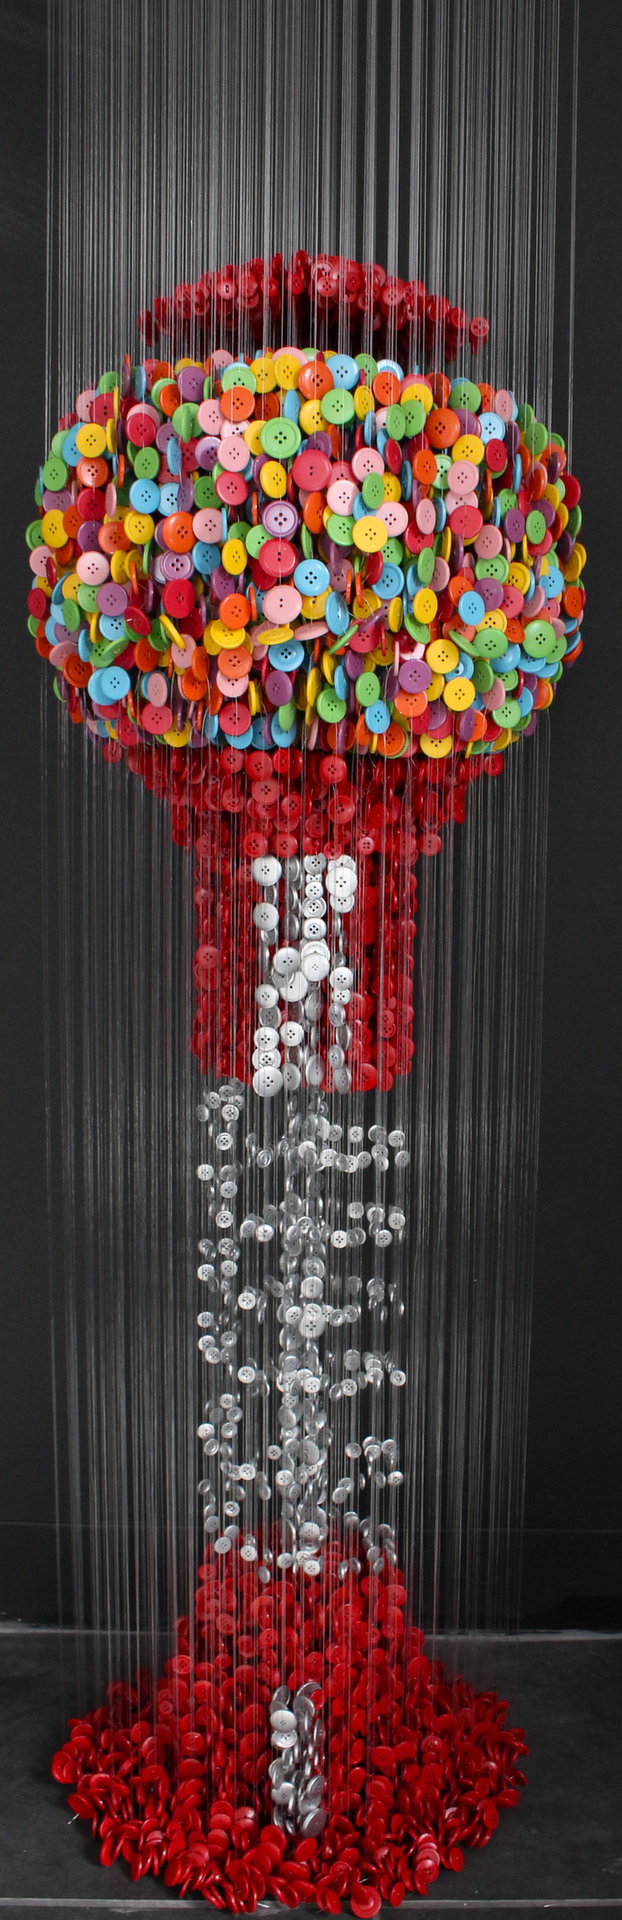 Инсталляции из разноцветных пуговиц (15 фото)